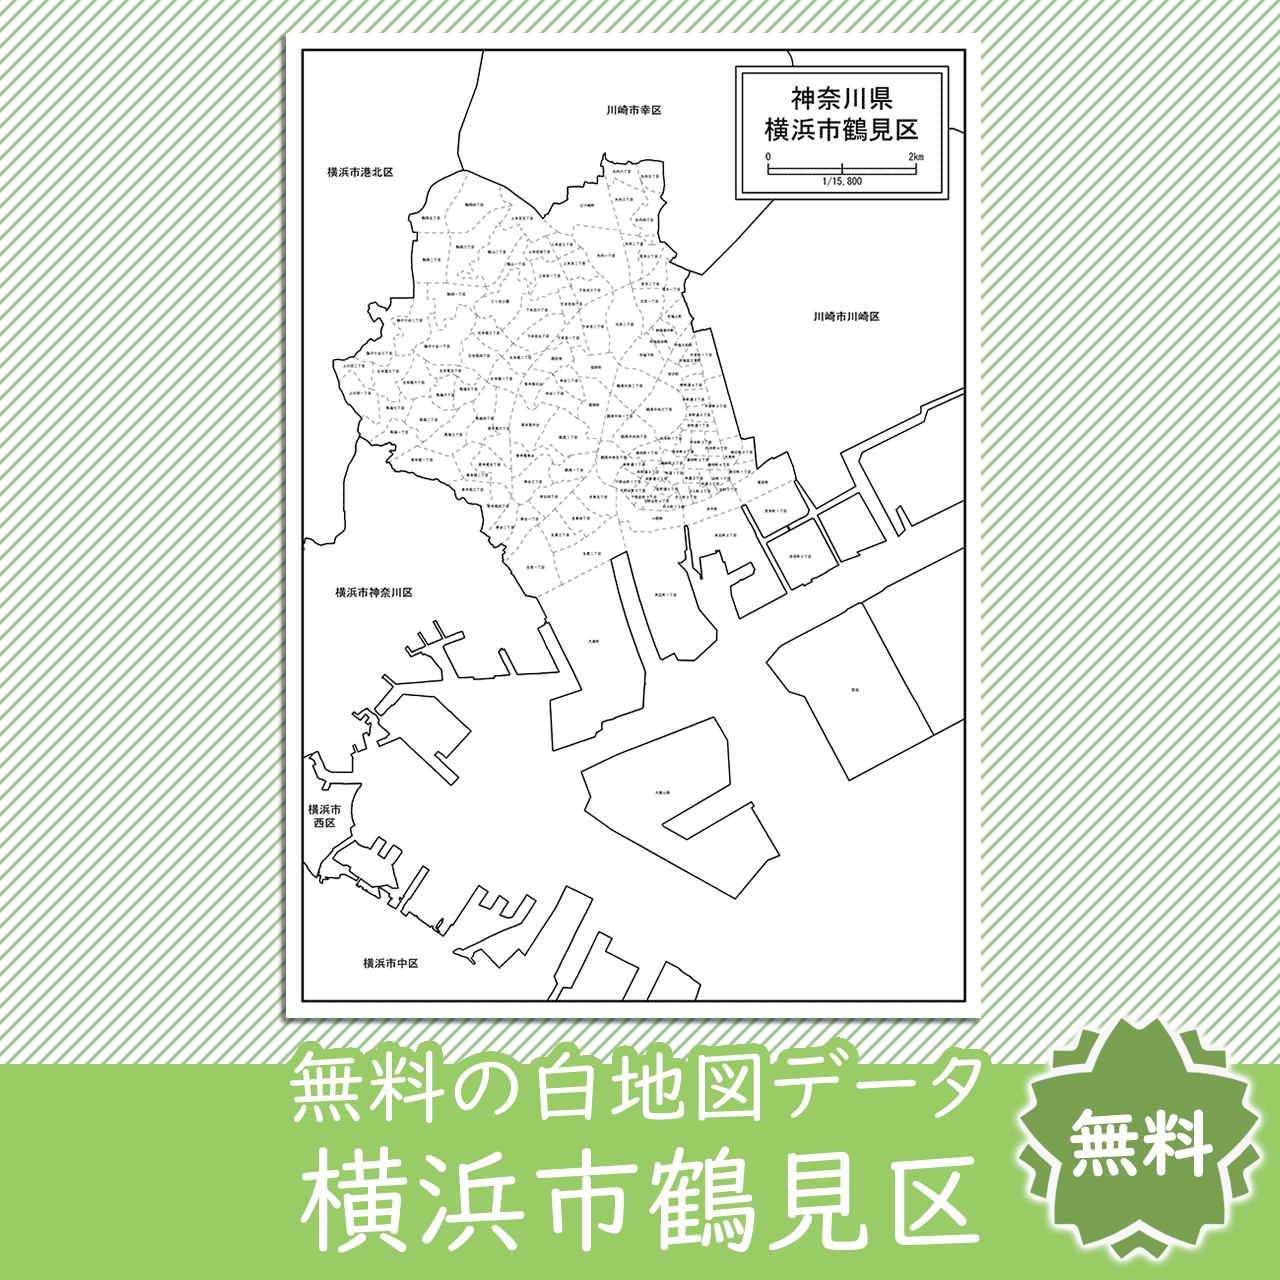 横浜市鶴見区の白地図を無料ダウンロード 白地図専門店